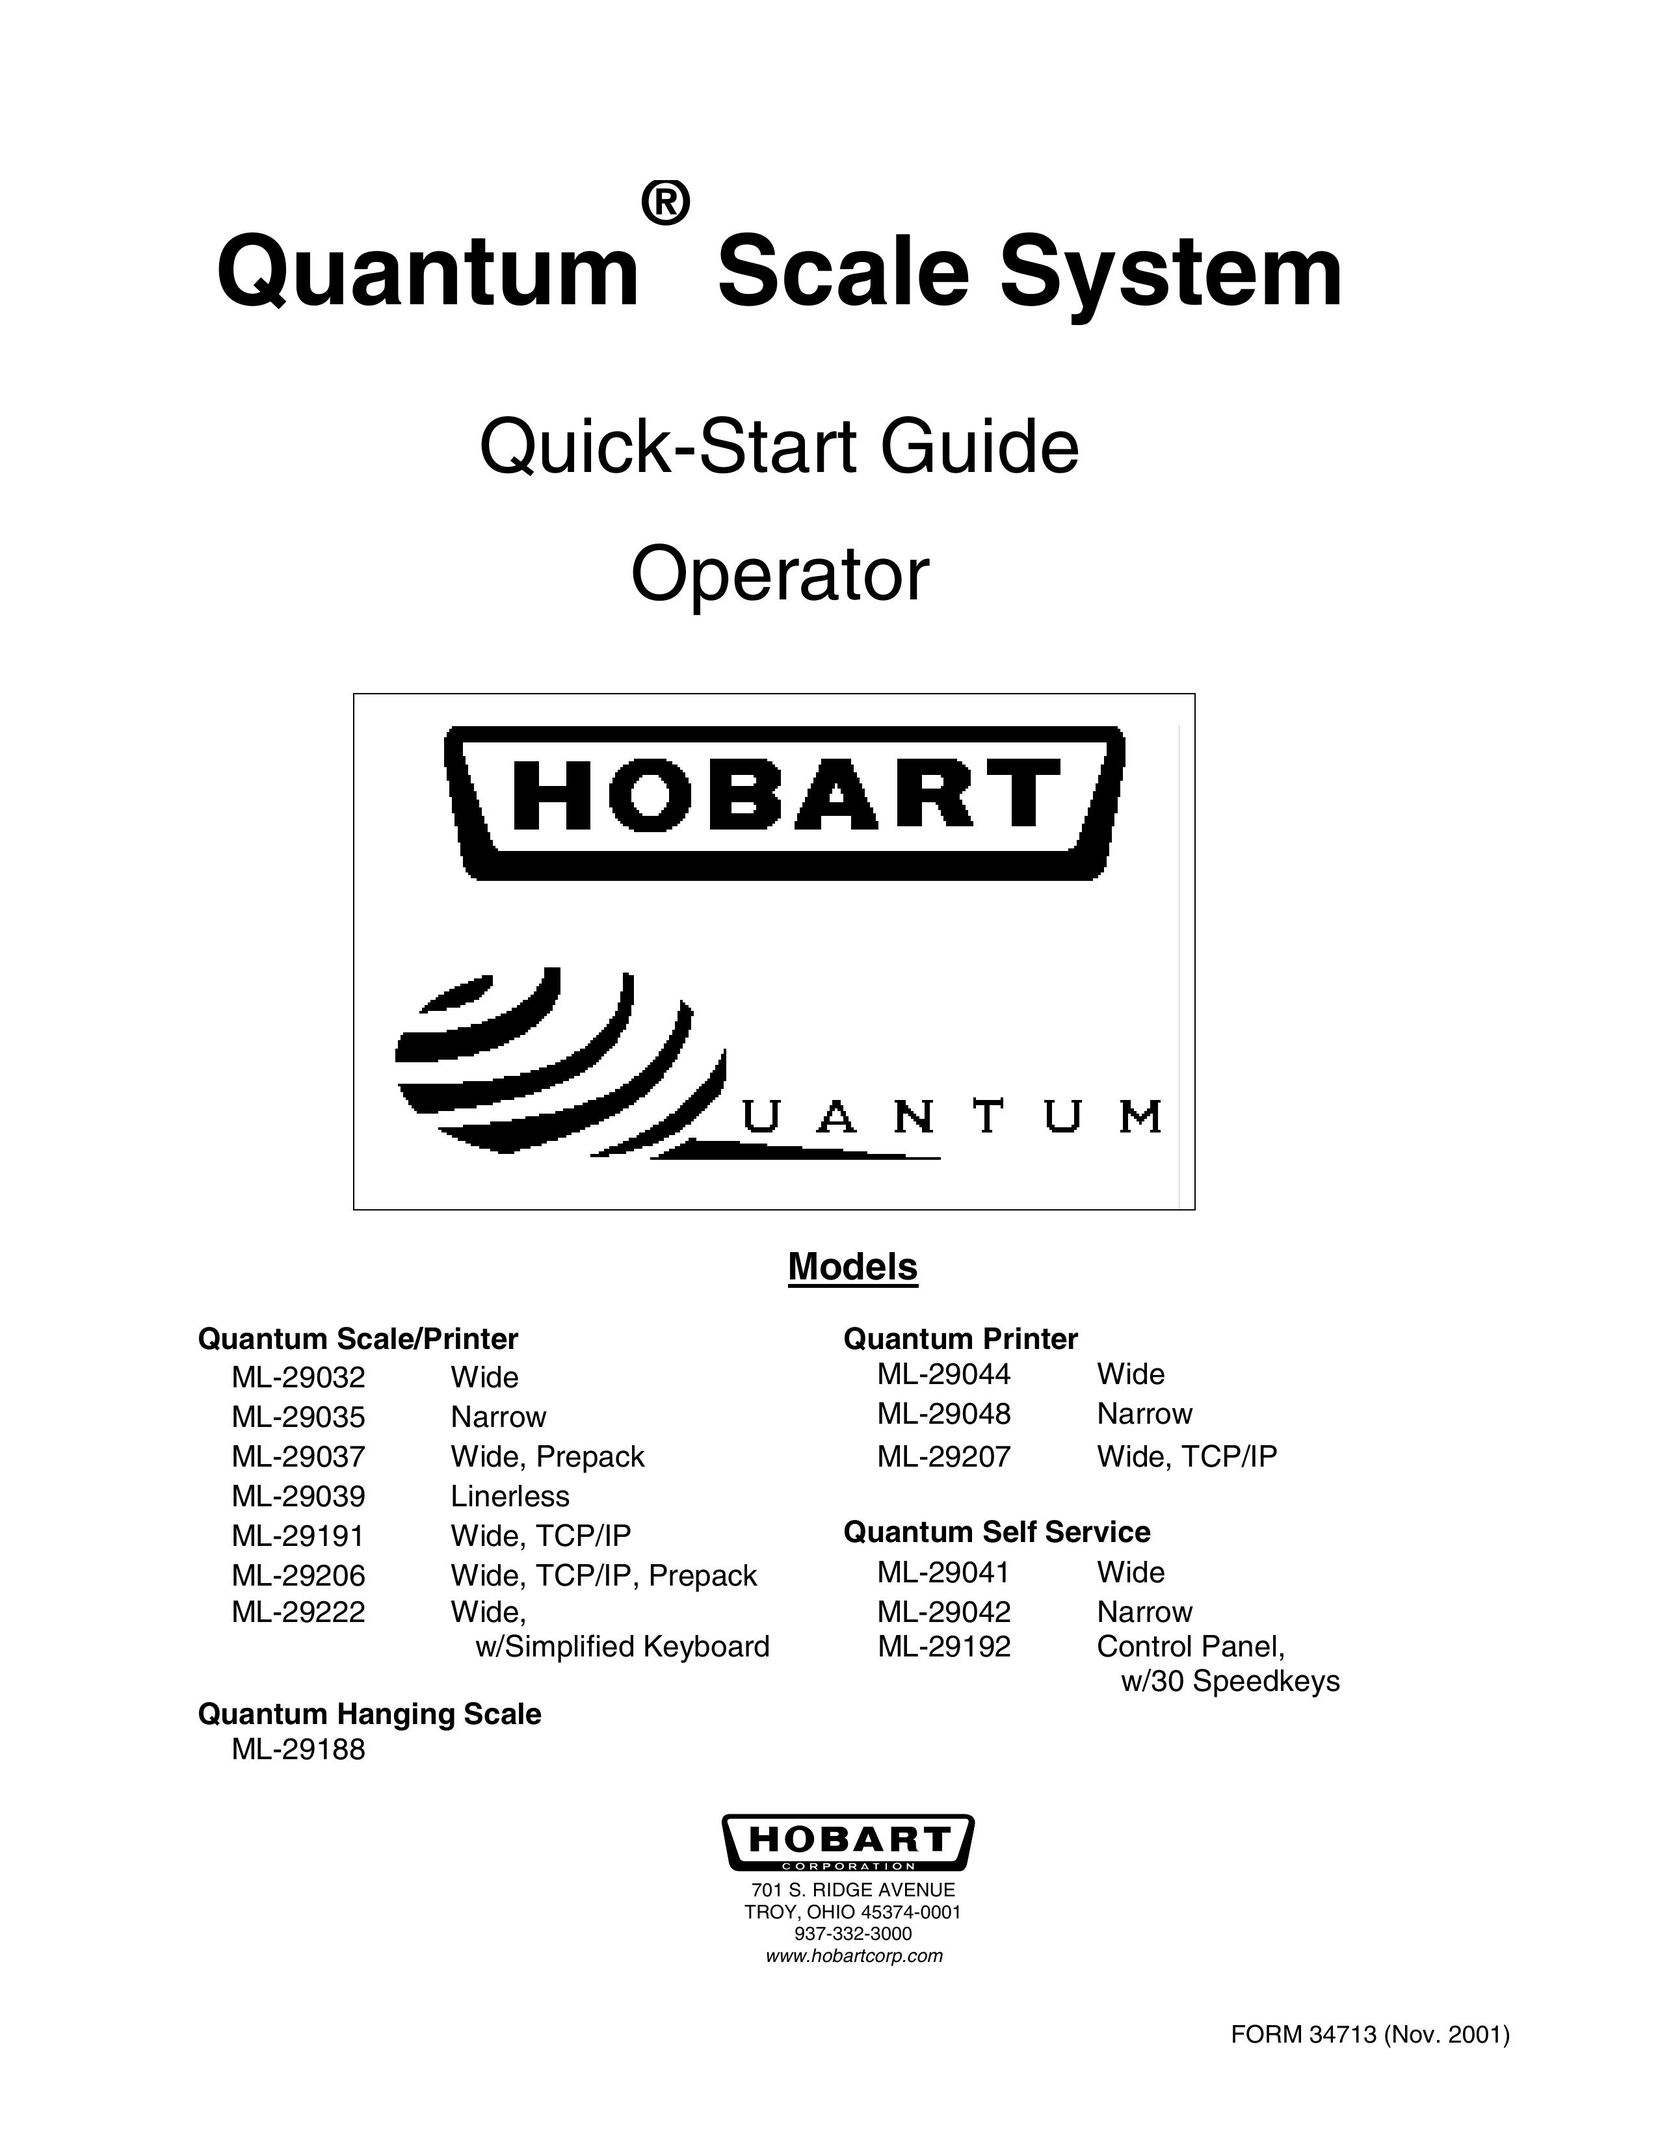 Hobart ML-29206 Printer User Manual